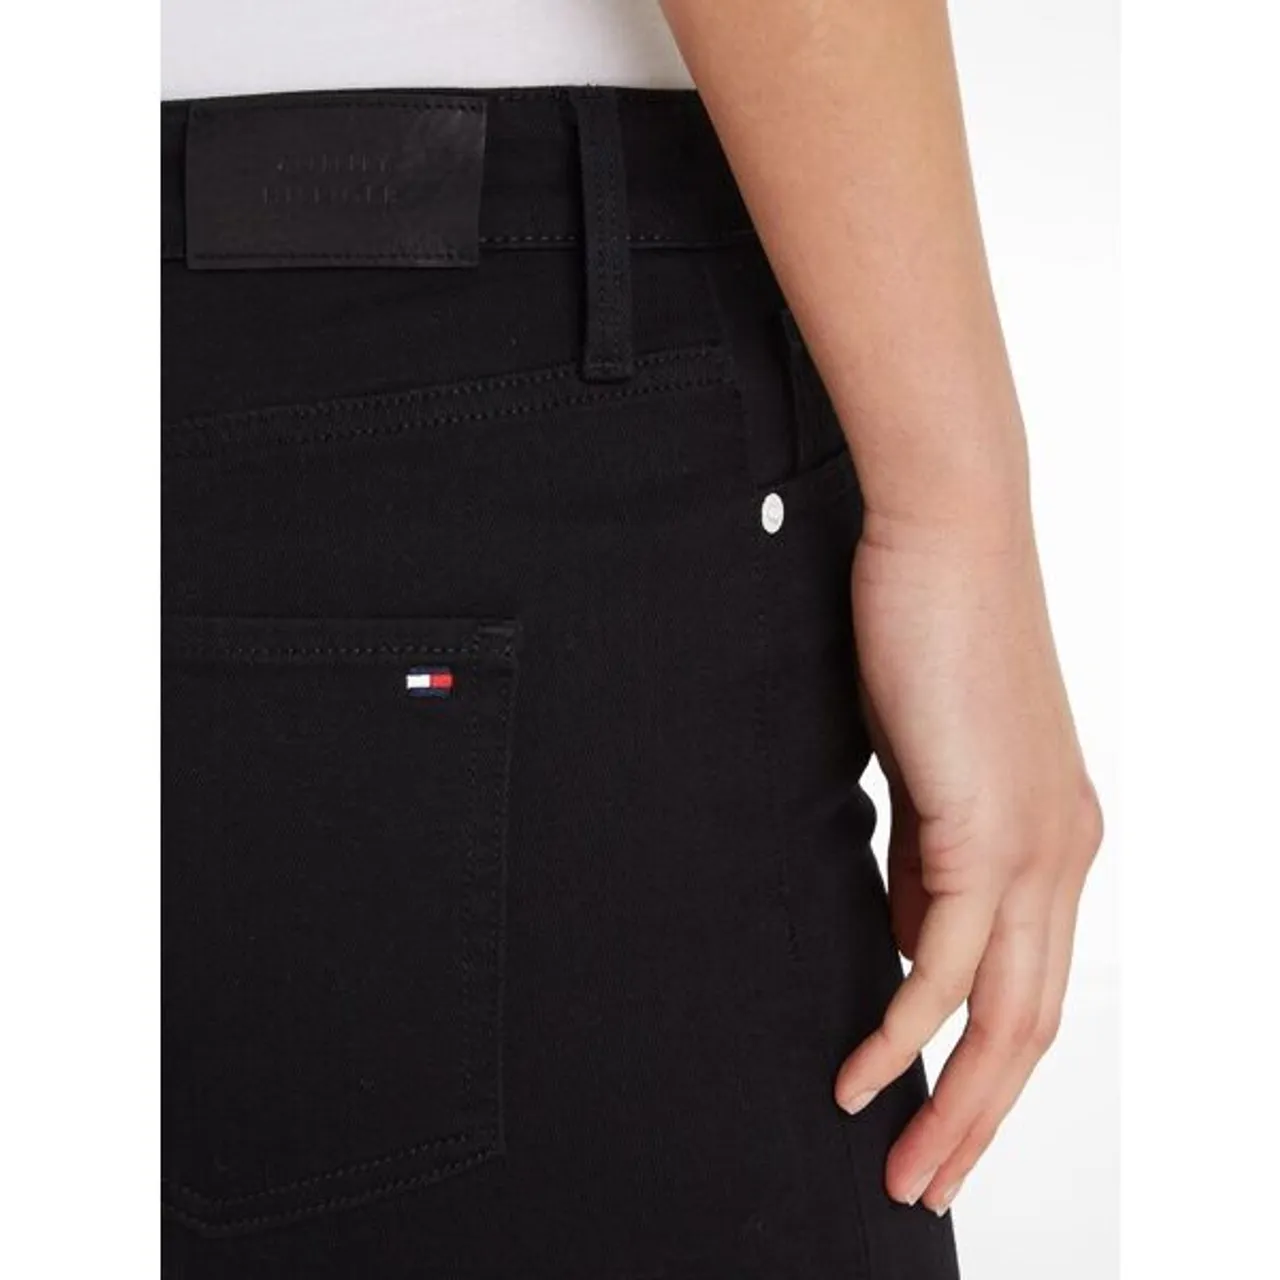 Bootcut-Jeans TOMMY HILFIGER Gr. 31, Länge 32, schwarz (black) Damen Jeans Bootcut mit Bügelfalten